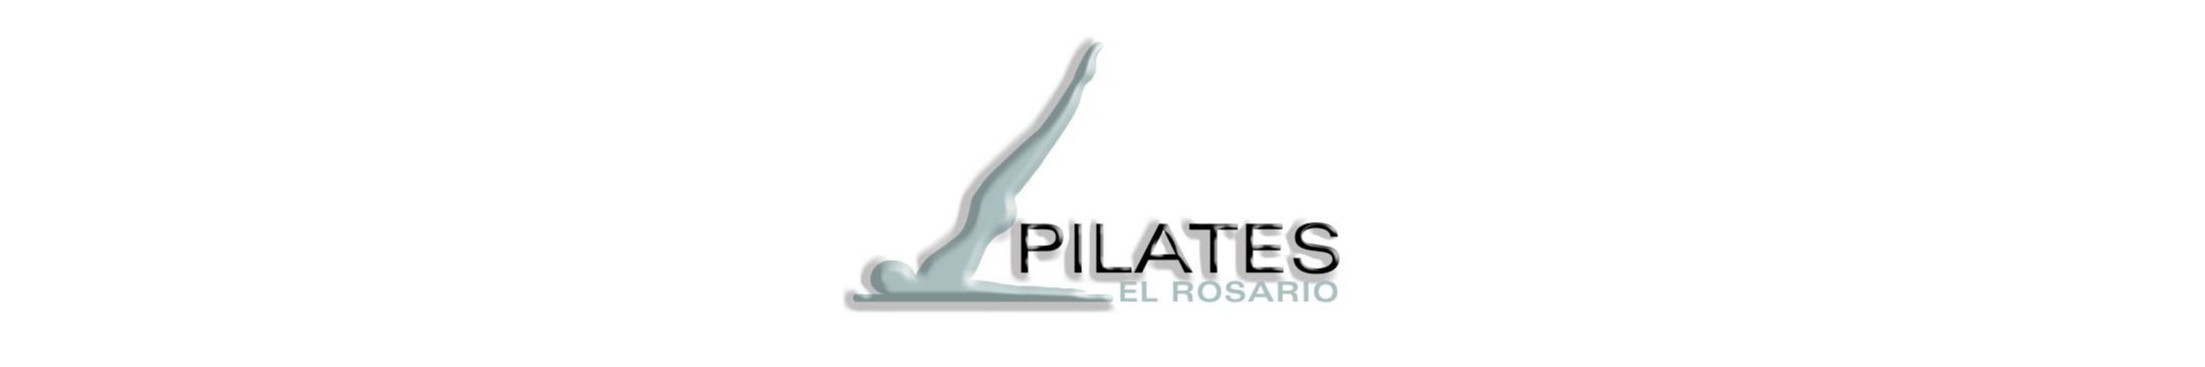 Pilates El Rosario Marbella